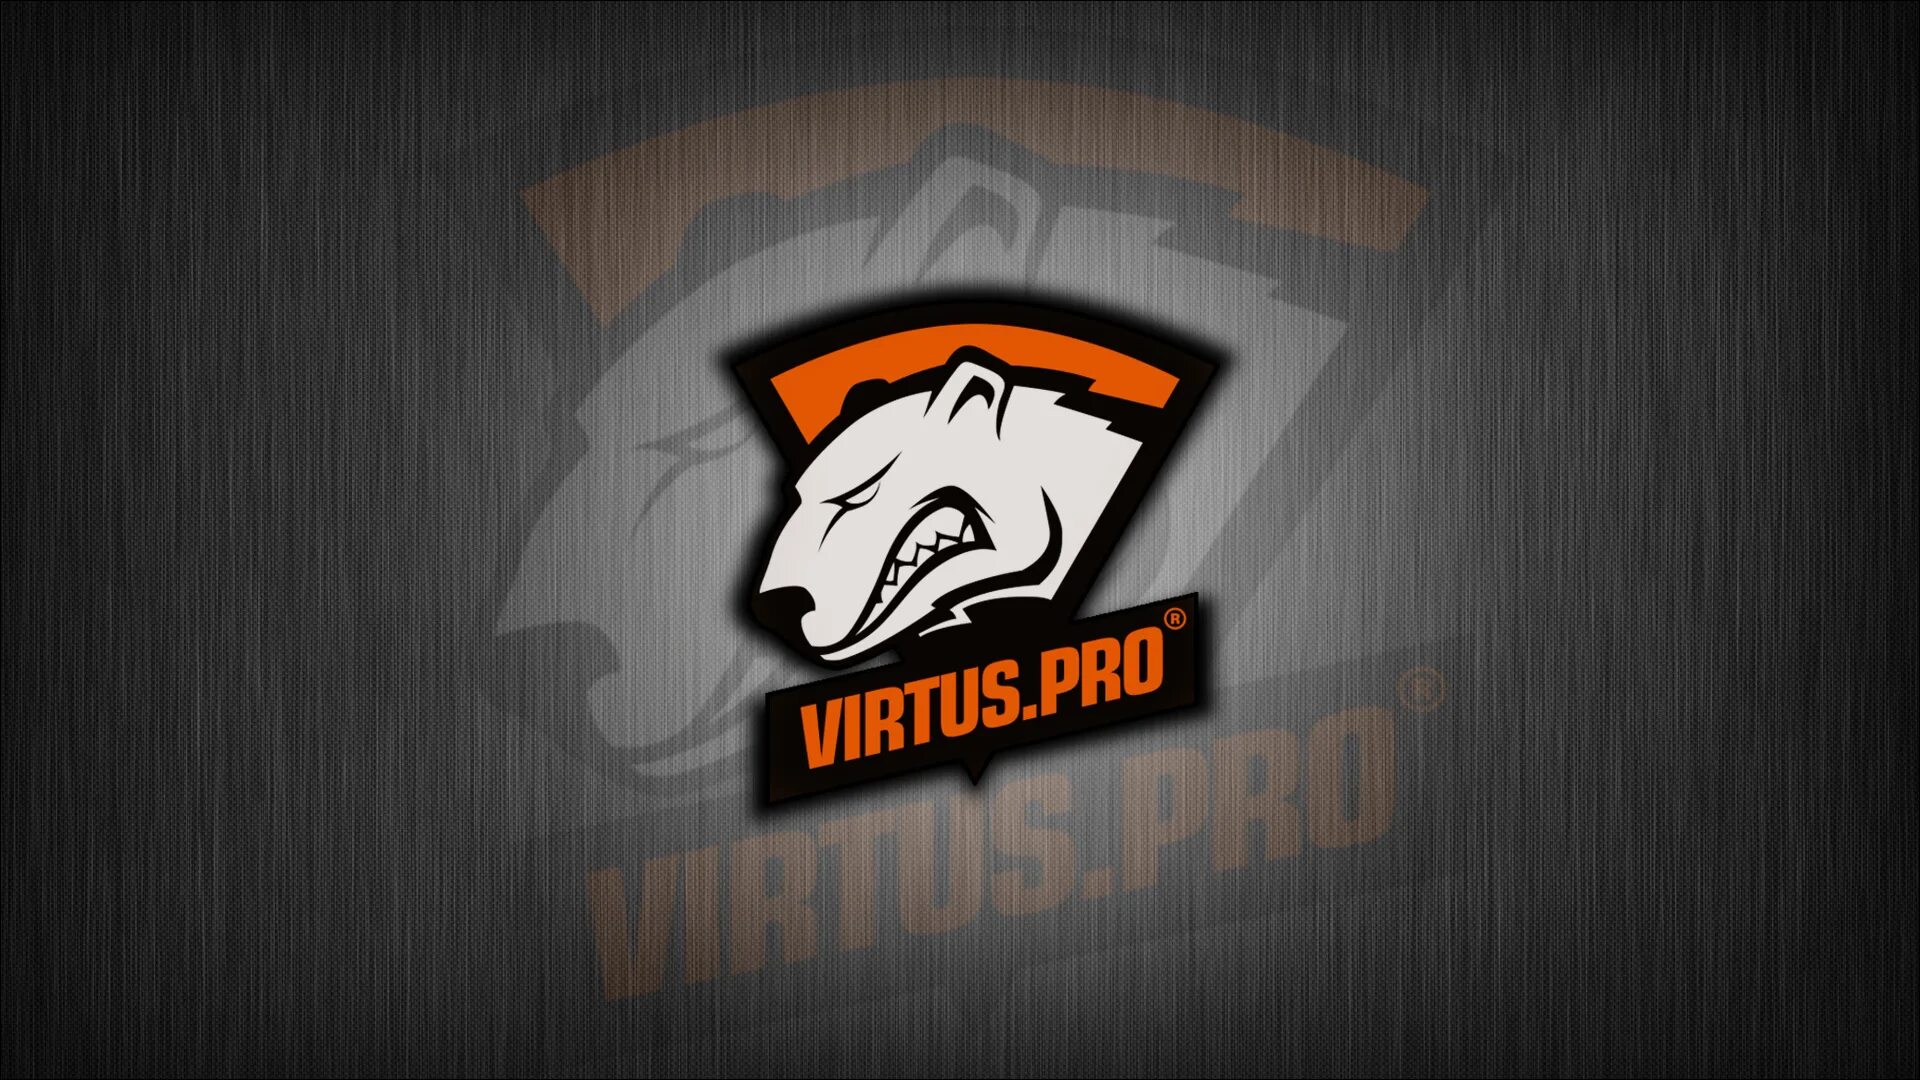 VP Virtus Pro. Virtus Pro 2022. Vartu Pro. Virtus Pro логотип. Heroic virtus pro